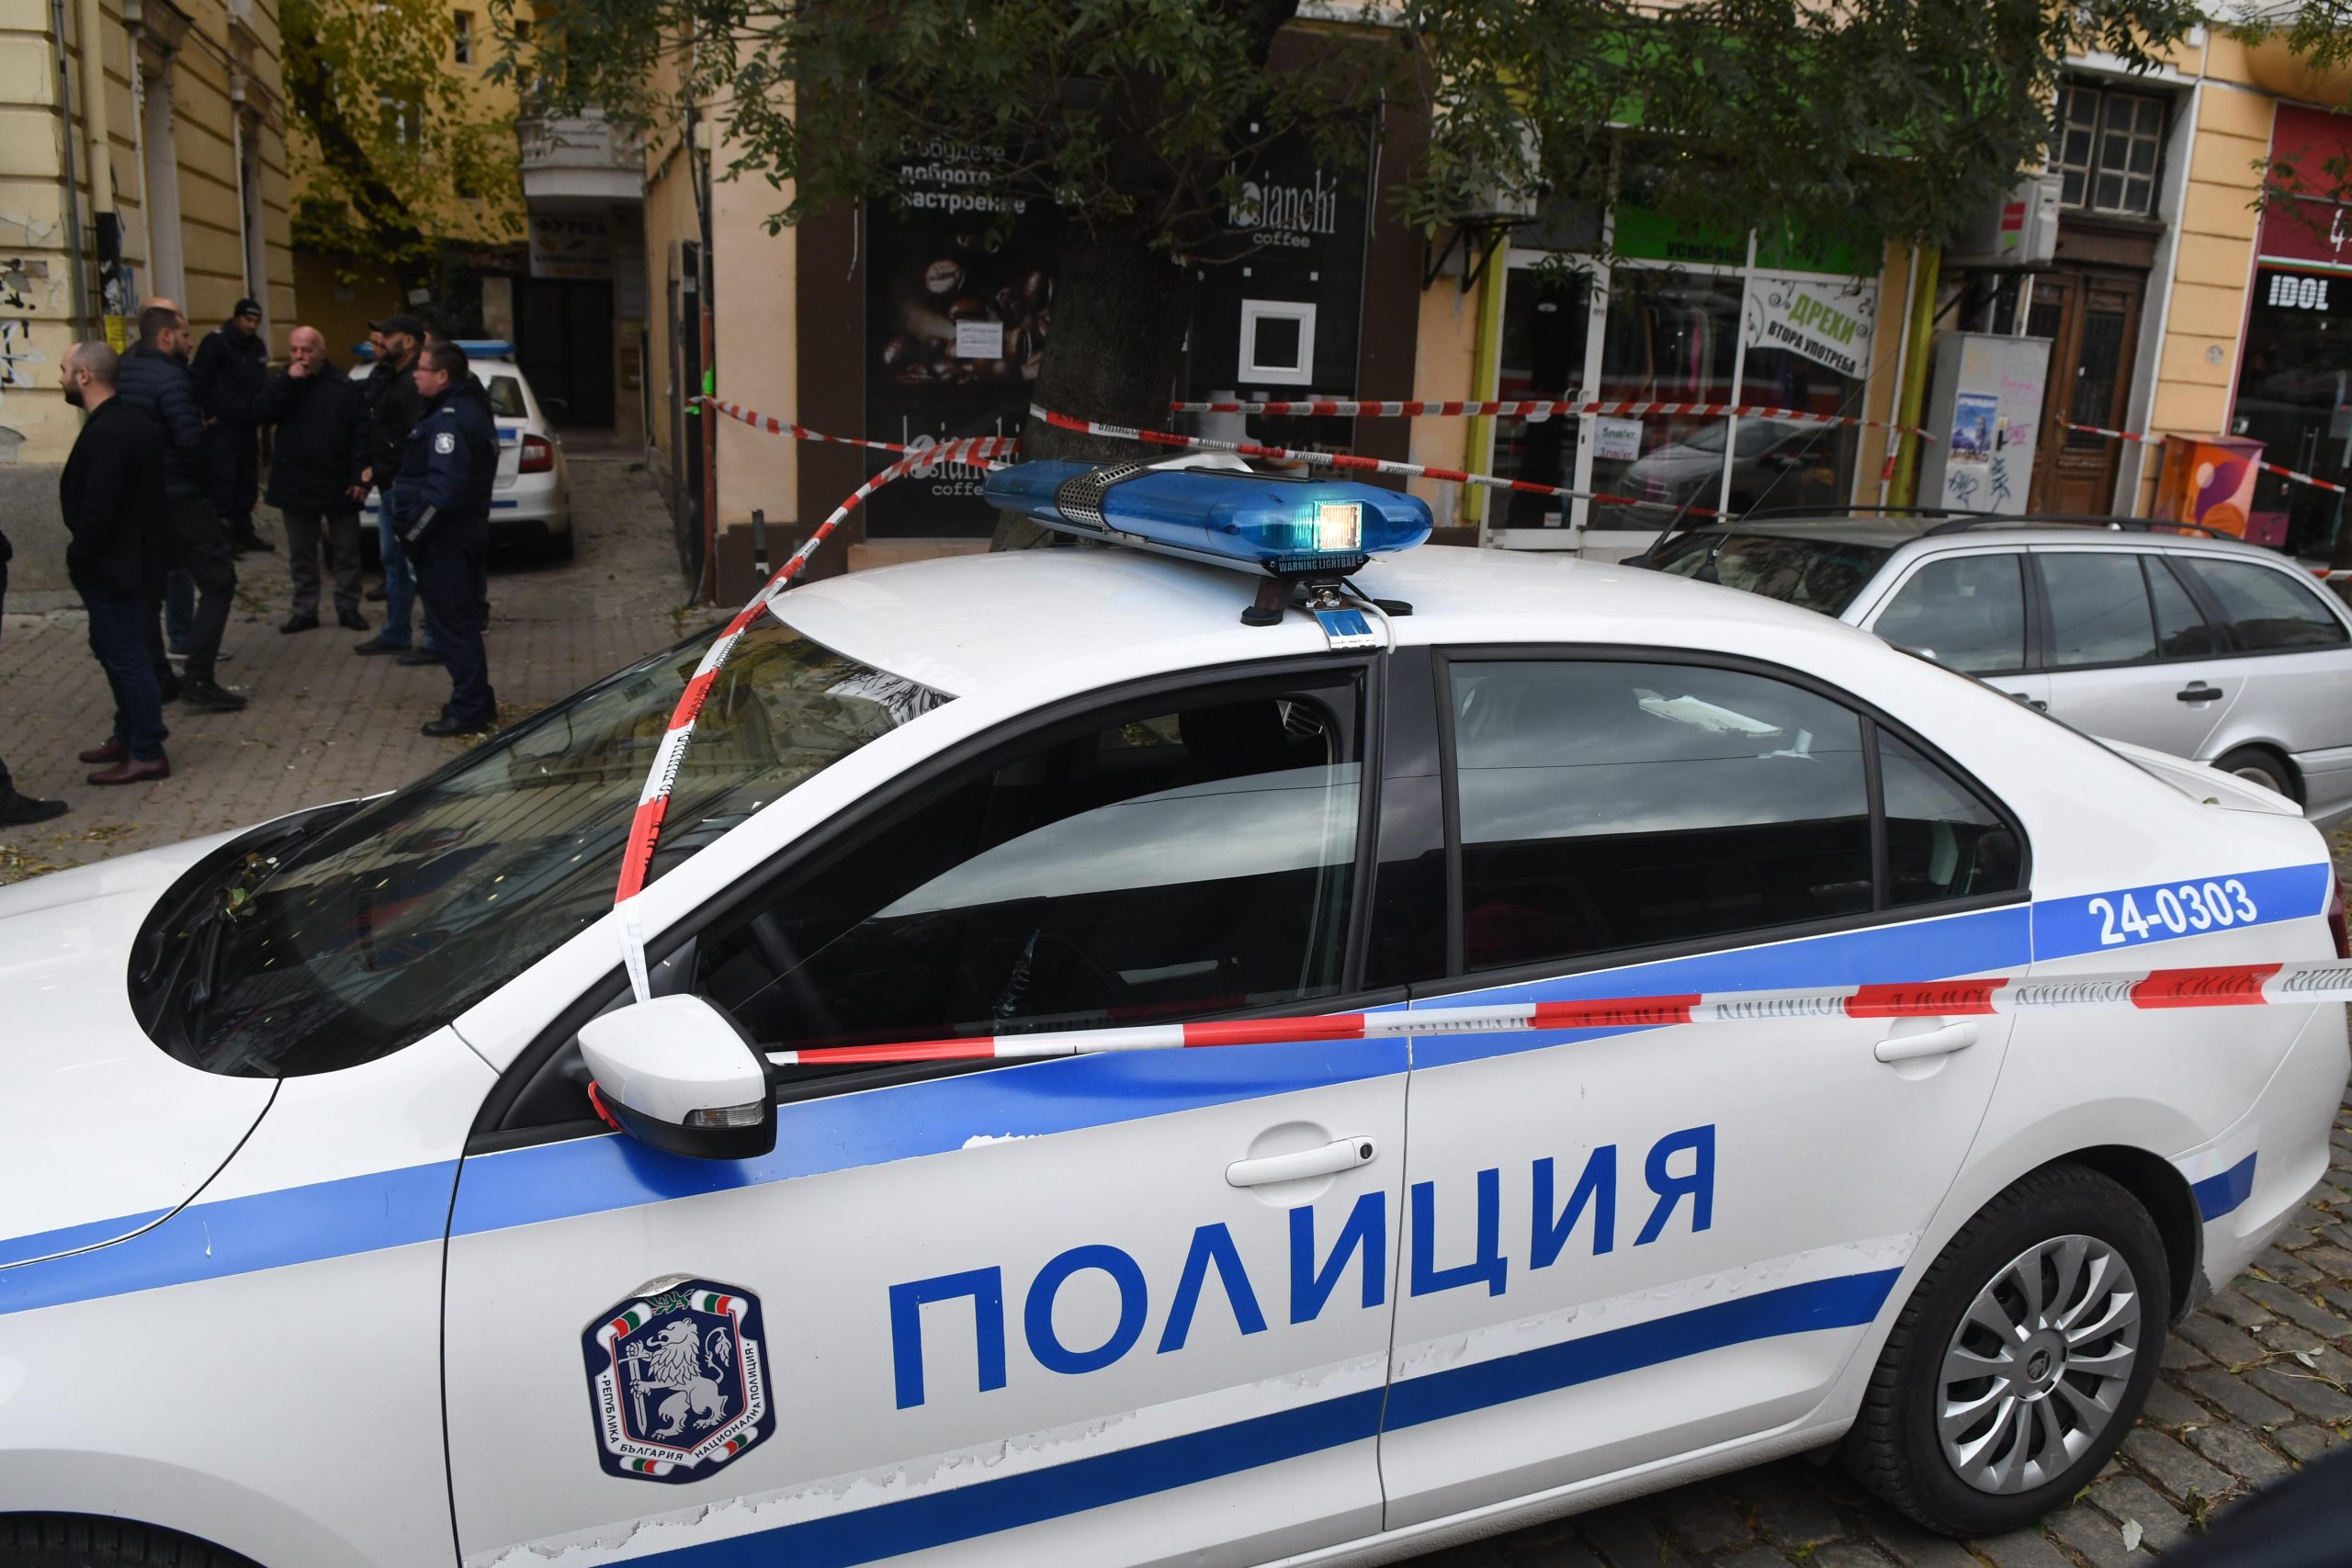 17-годишно момиче е било убито в Нова Загора в началото